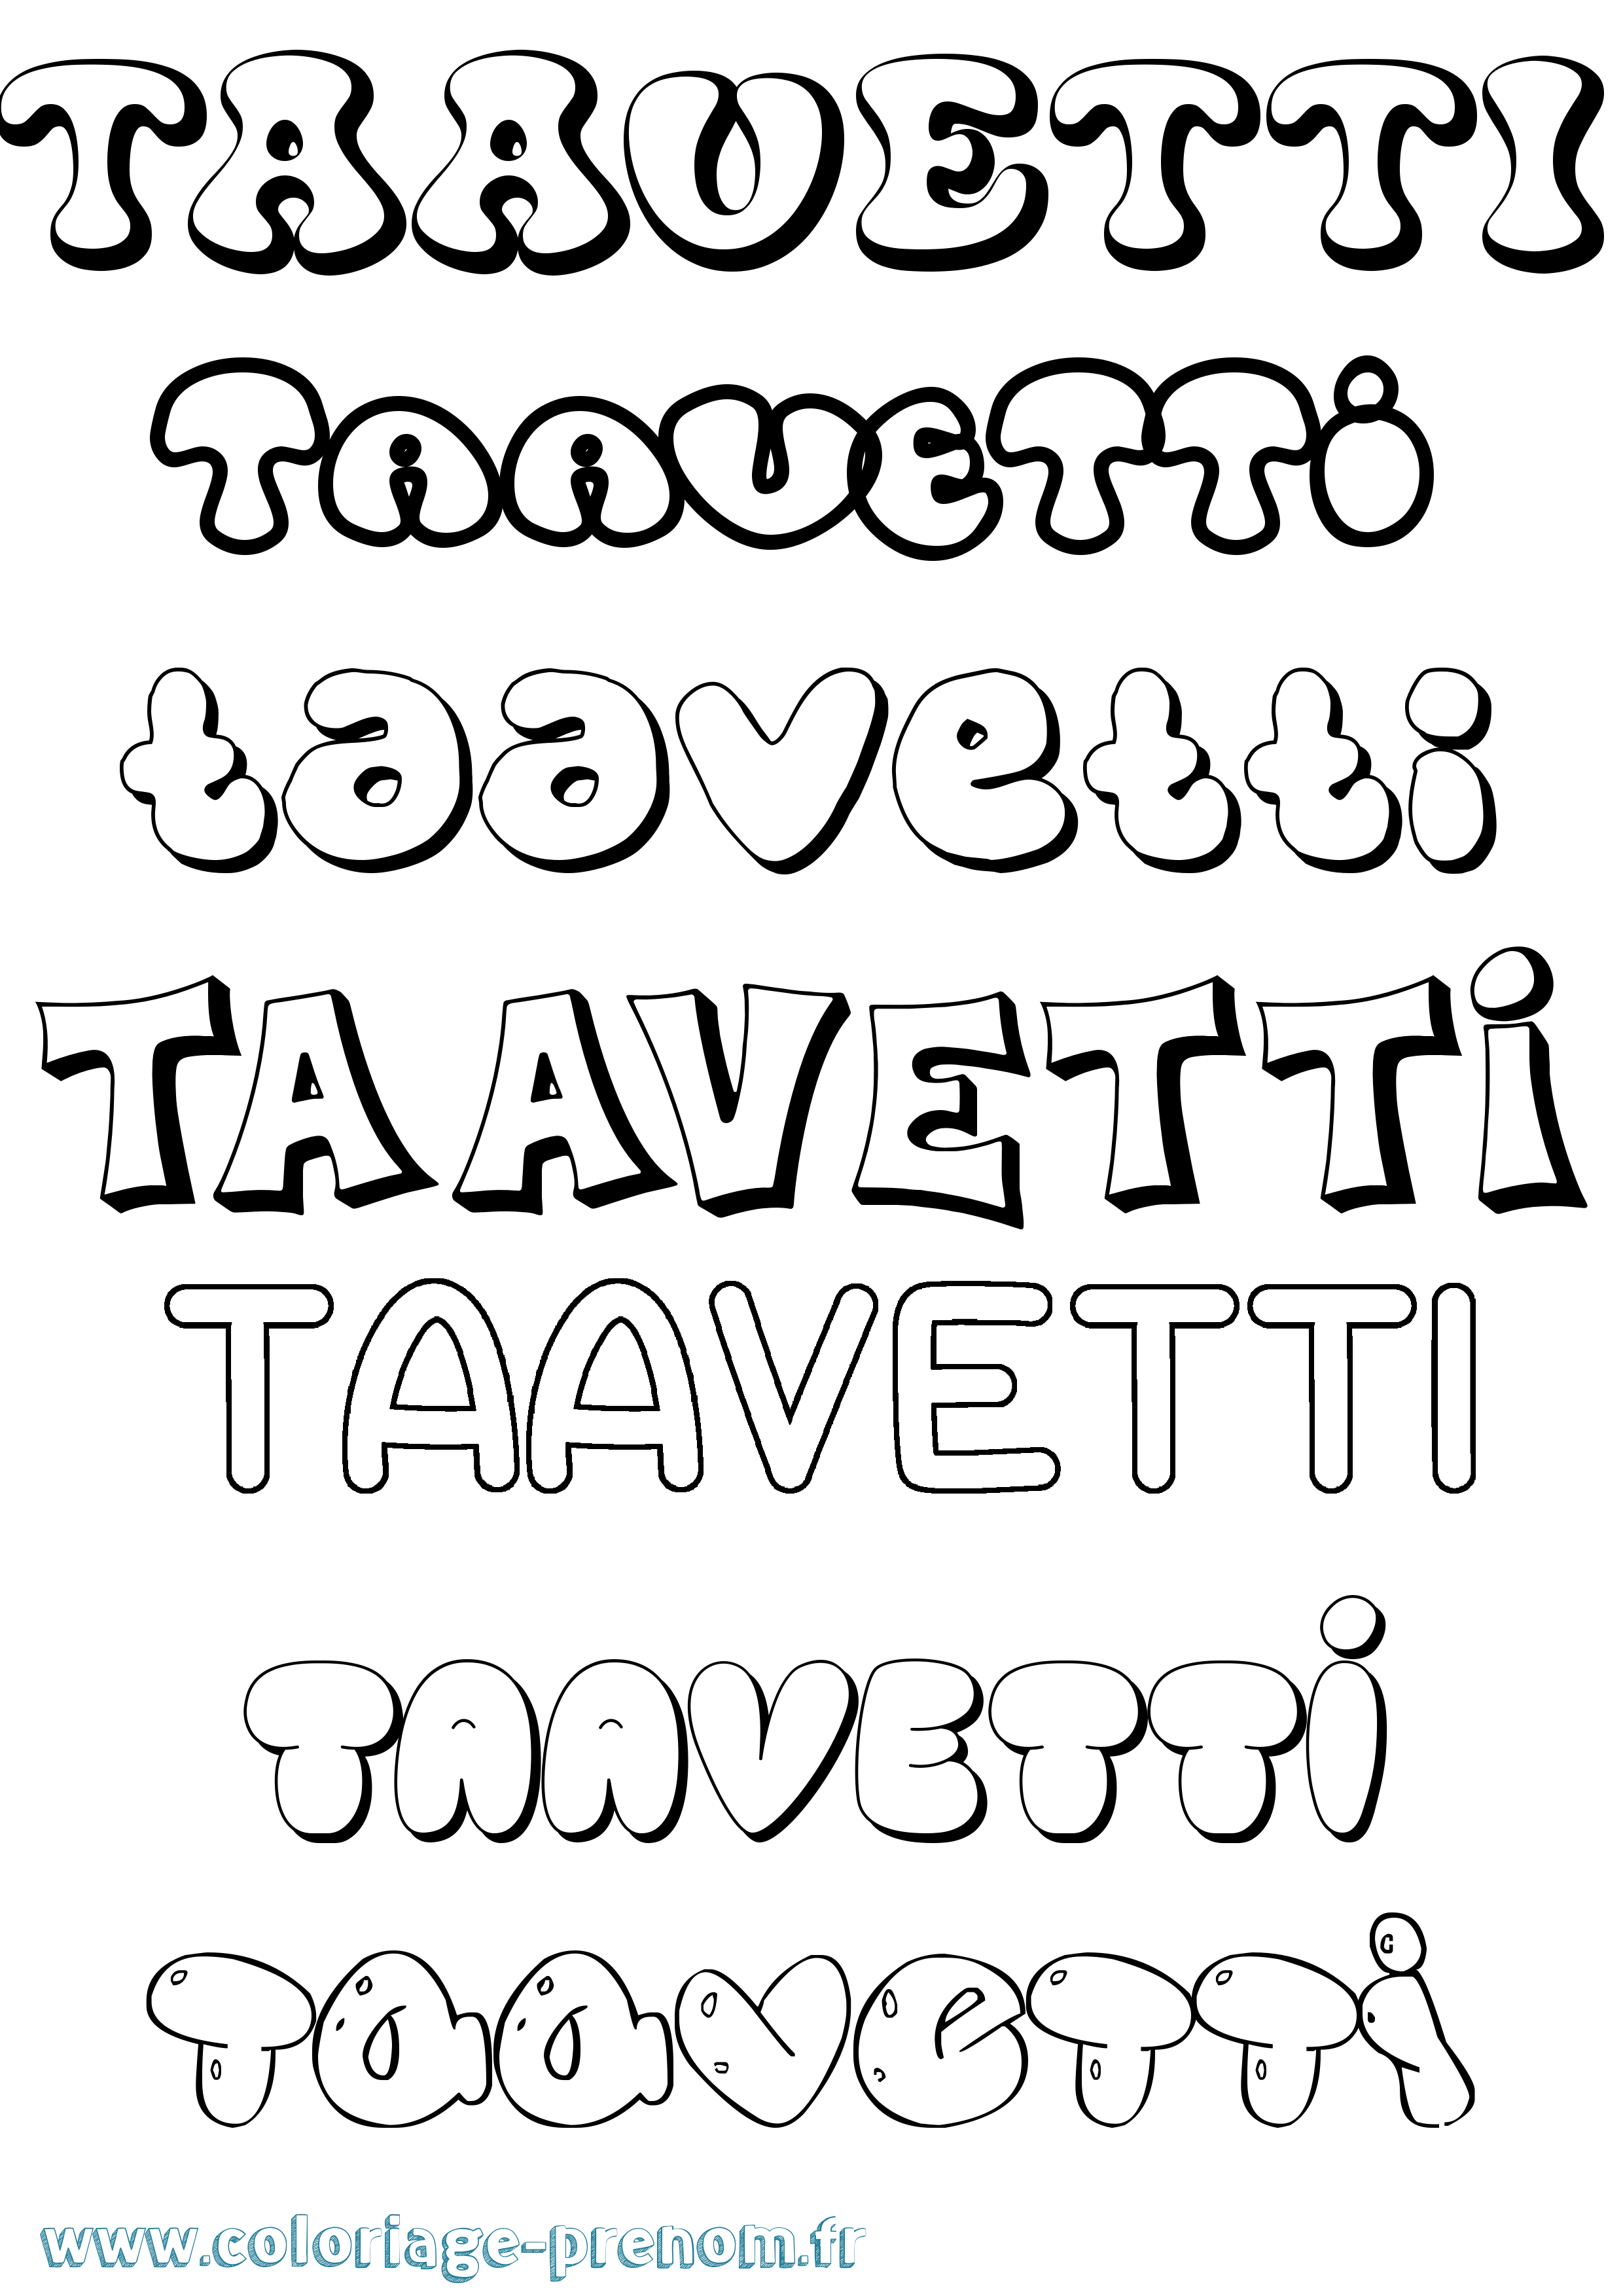 Coloriage prénom Taavetti Bubble